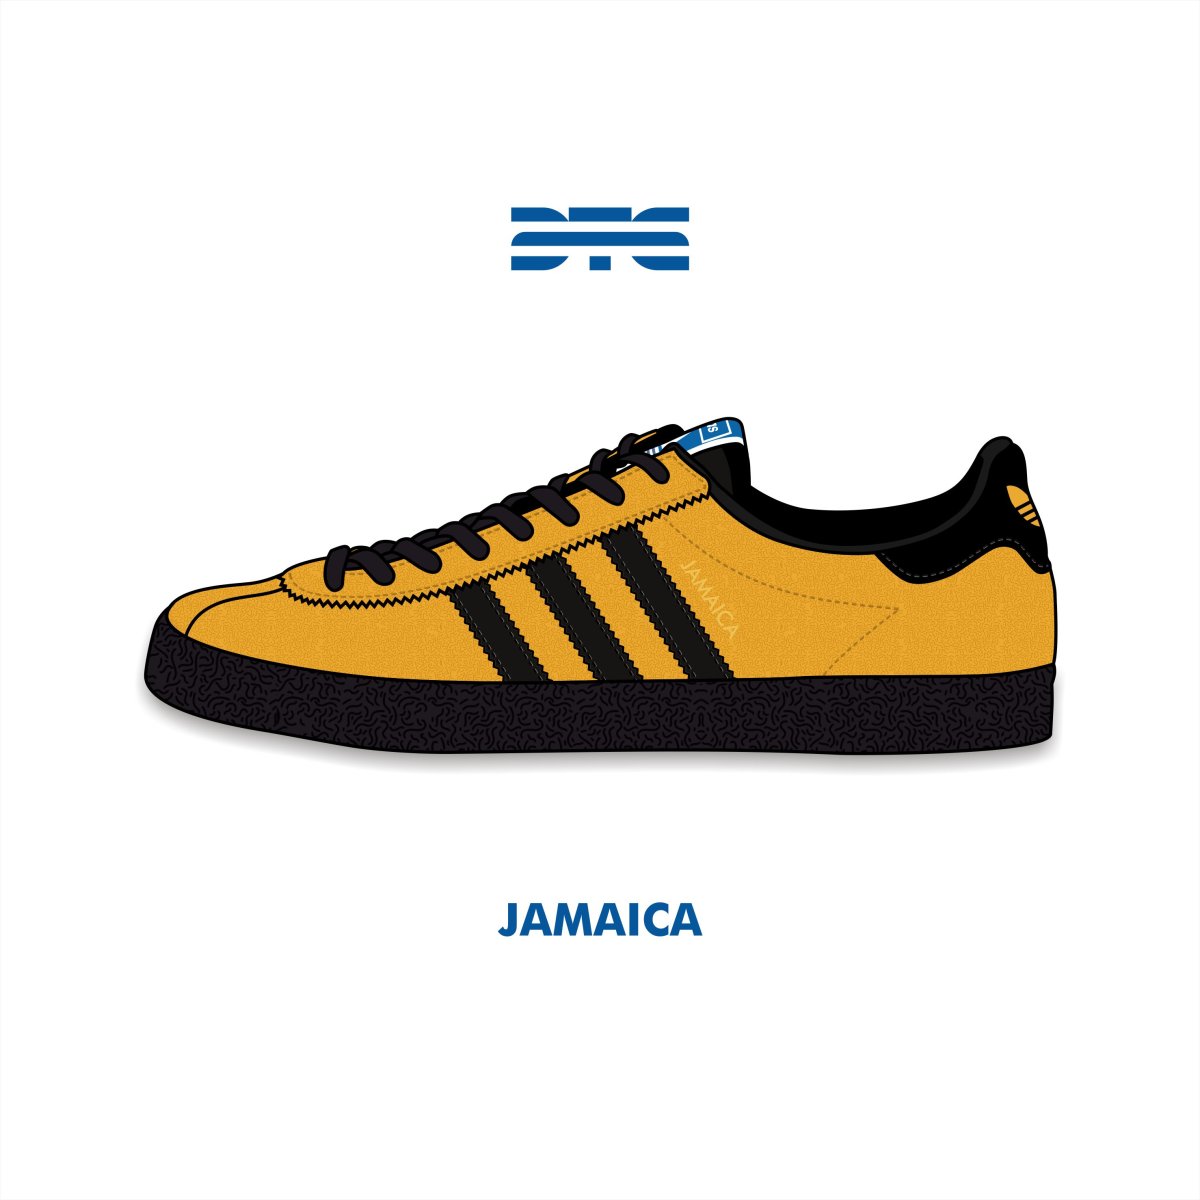 Adidas Jamaica цвета